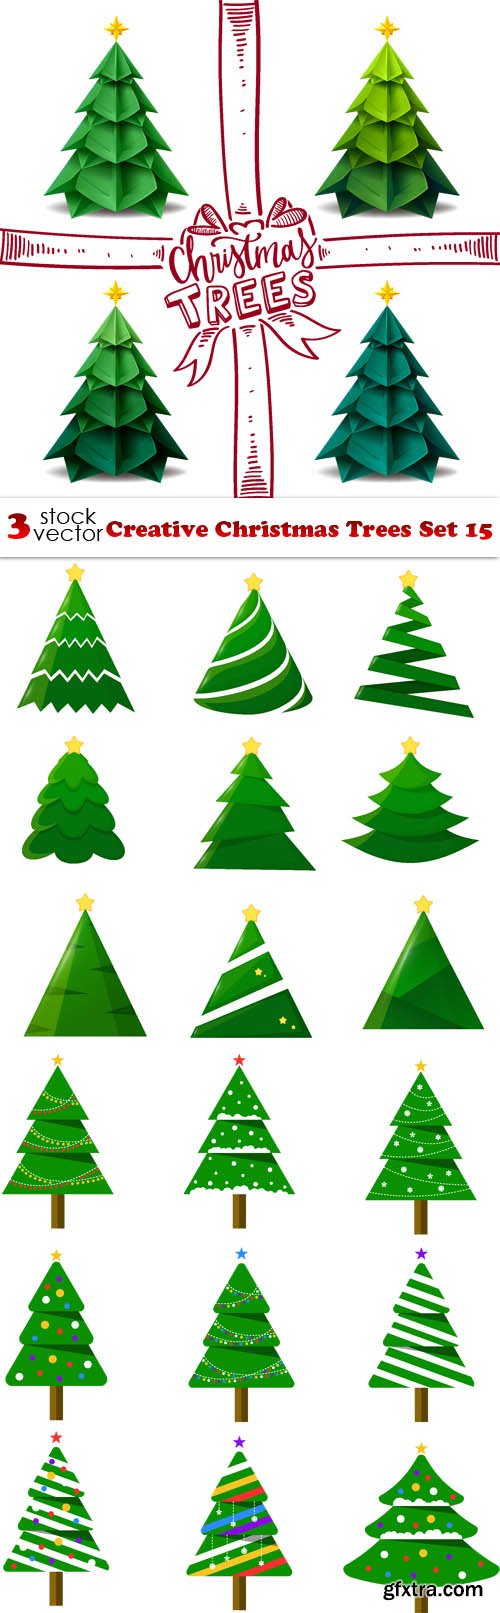 Vectors - Creative Christmas Trees Set 15